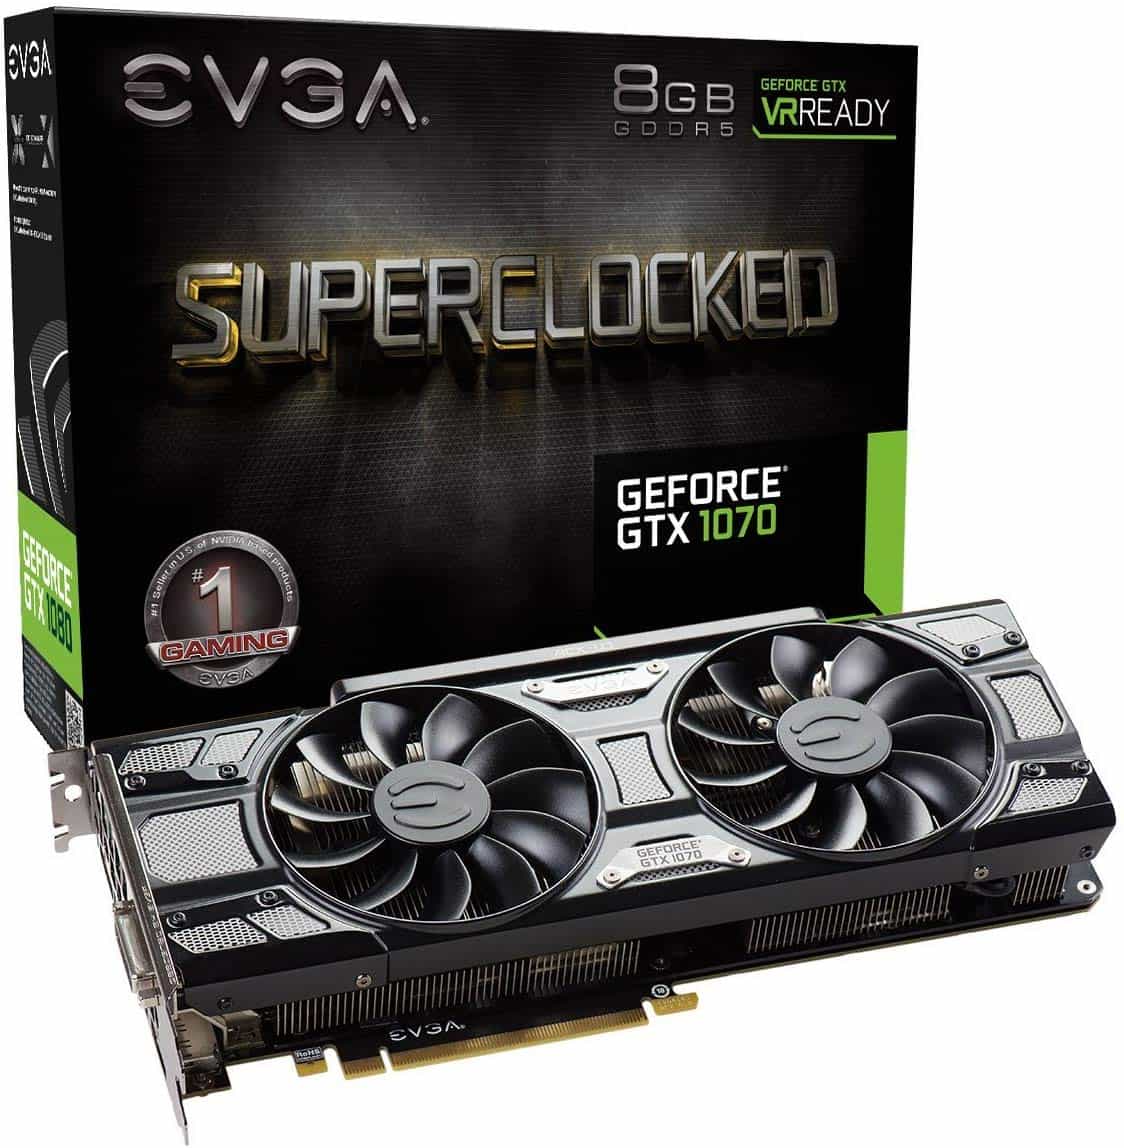 EVGA GeForce GTX 1070 SC Gaming